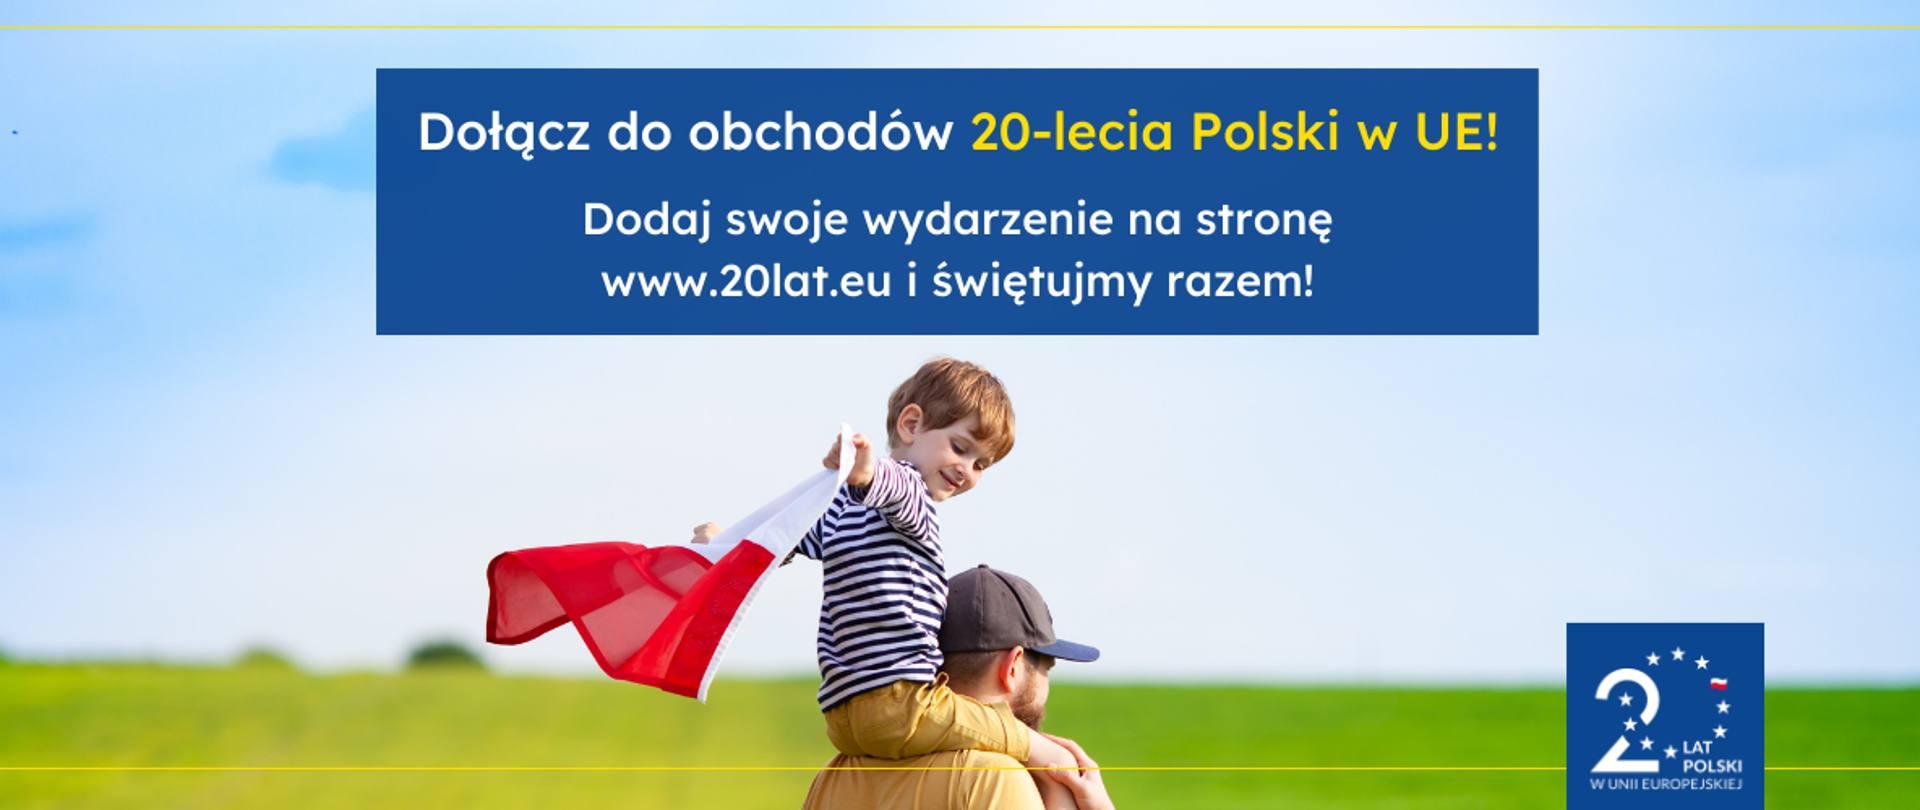 Dołącz do obchodów 20-lecia Polski w Unii Europejskiej
